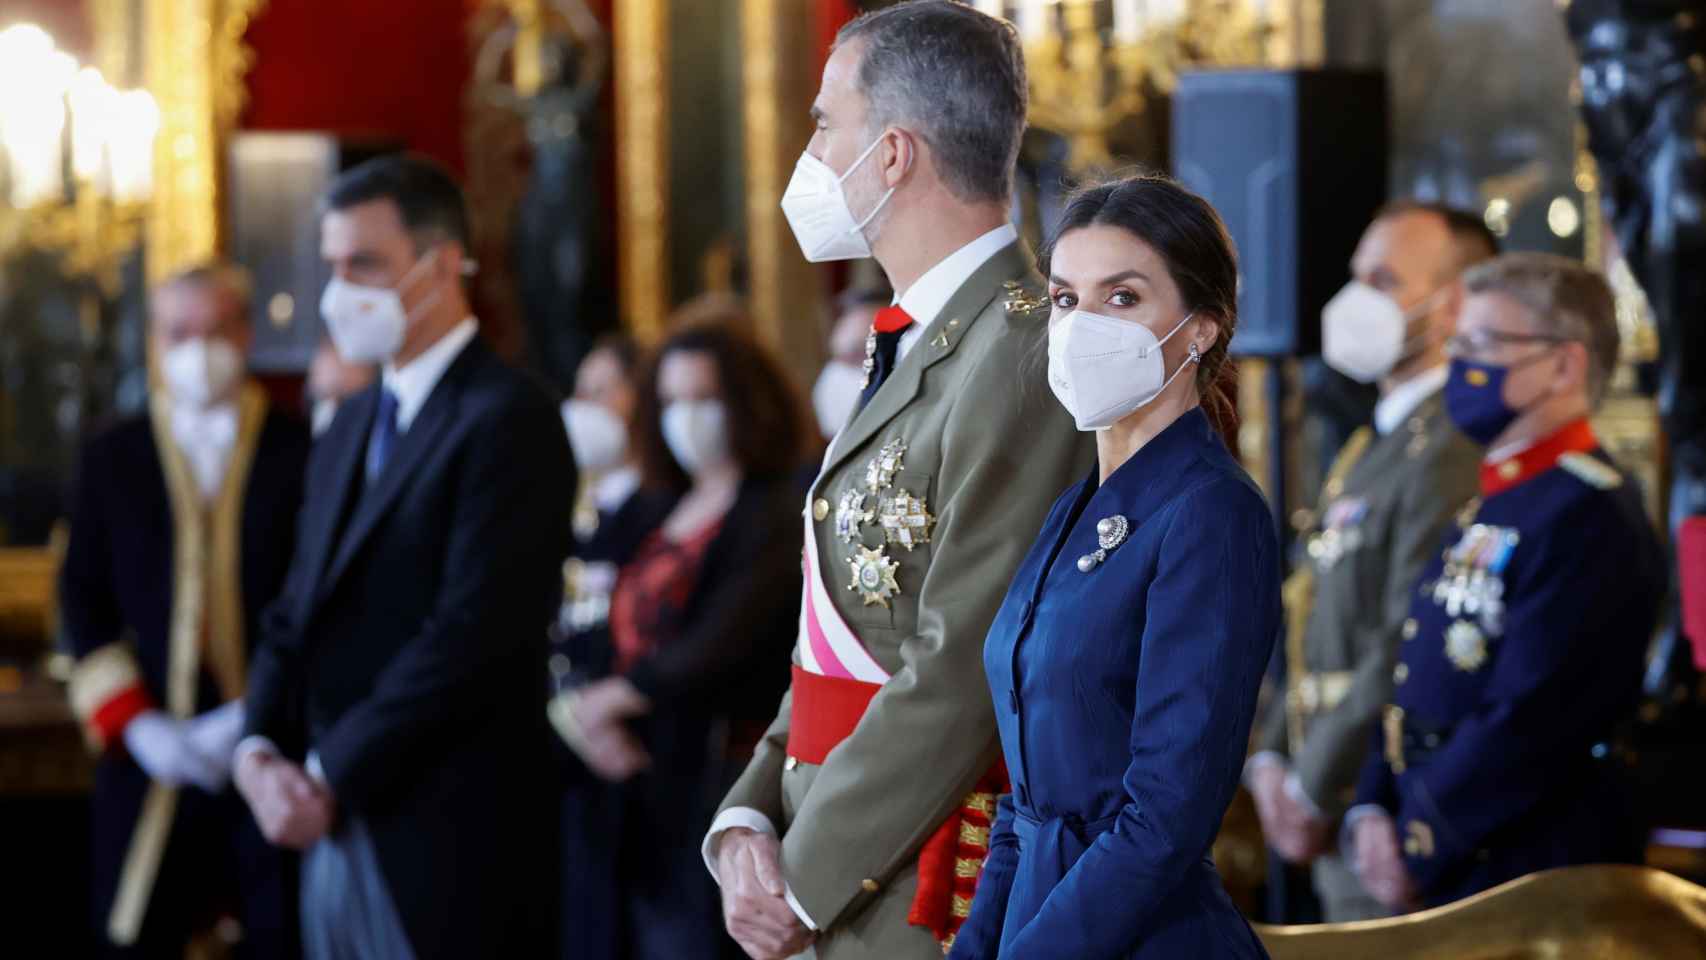 La reina Letizia en el Palacio Real de Madrid junto a Felipe VI este jueves 6 de enero de 2022.